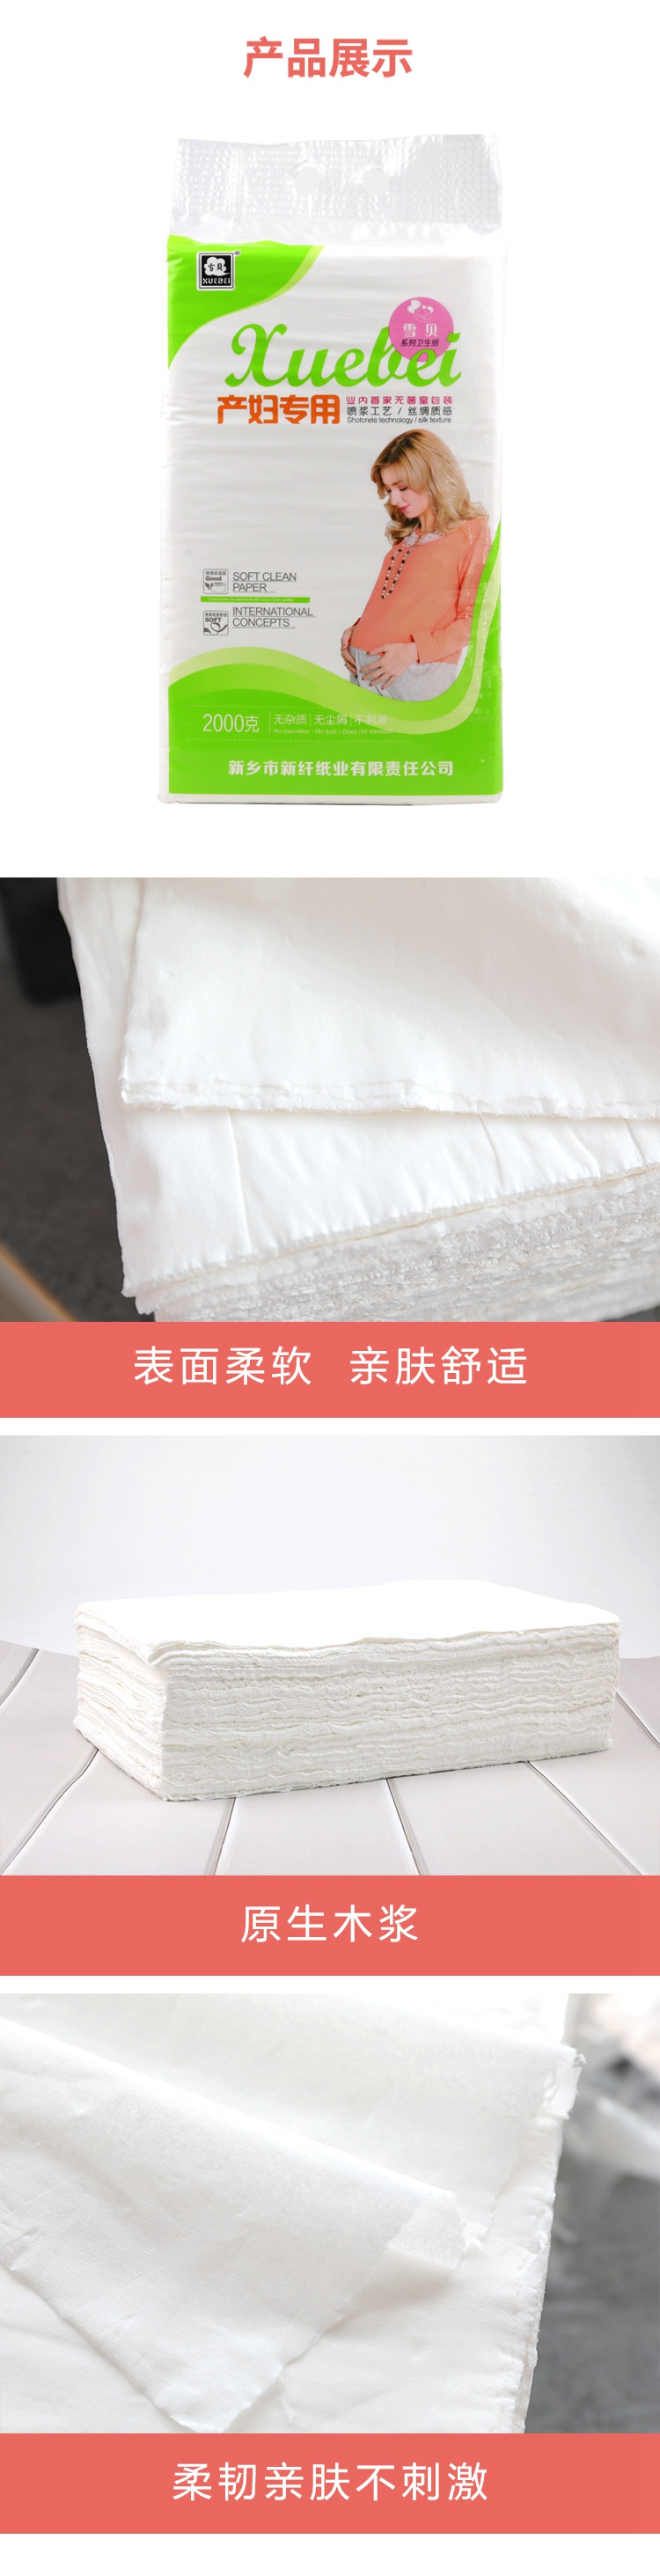 雪贝 产妇专用卫生纸2000g/提 产后用纸月子纸产房用纸巾